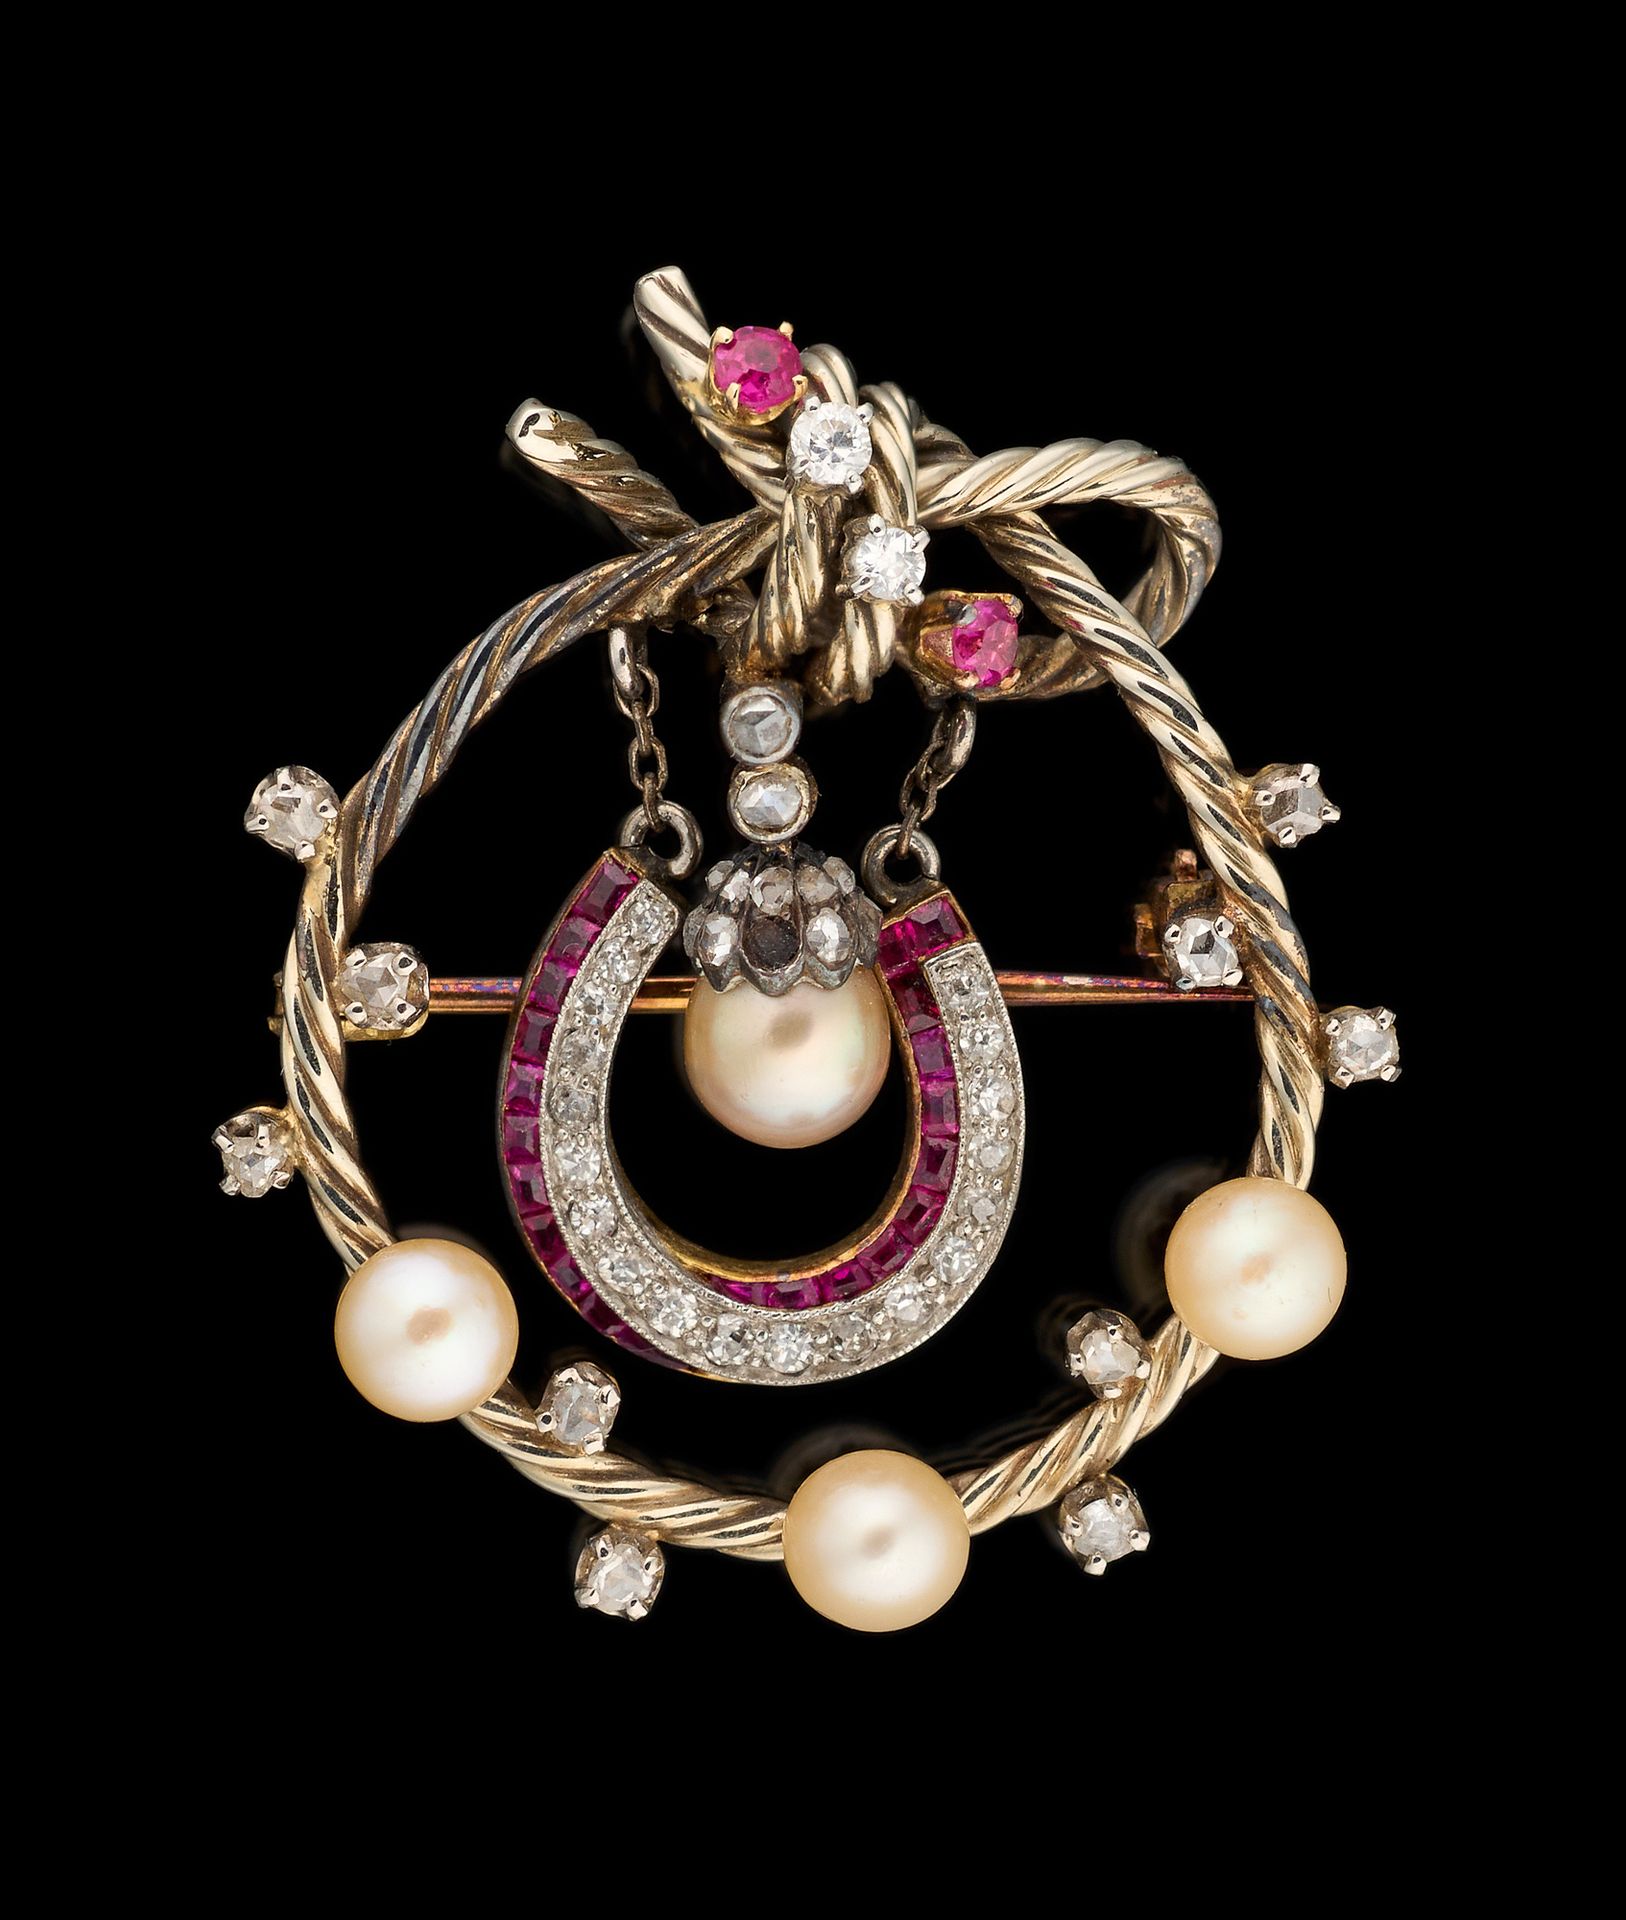 Joaillerie. 珠宝：铂金和黄金胸针，镶嵌老式切割钻石、红宝石和珍珠。

(小缺)。

尺寸：4 x 3,5厘米。